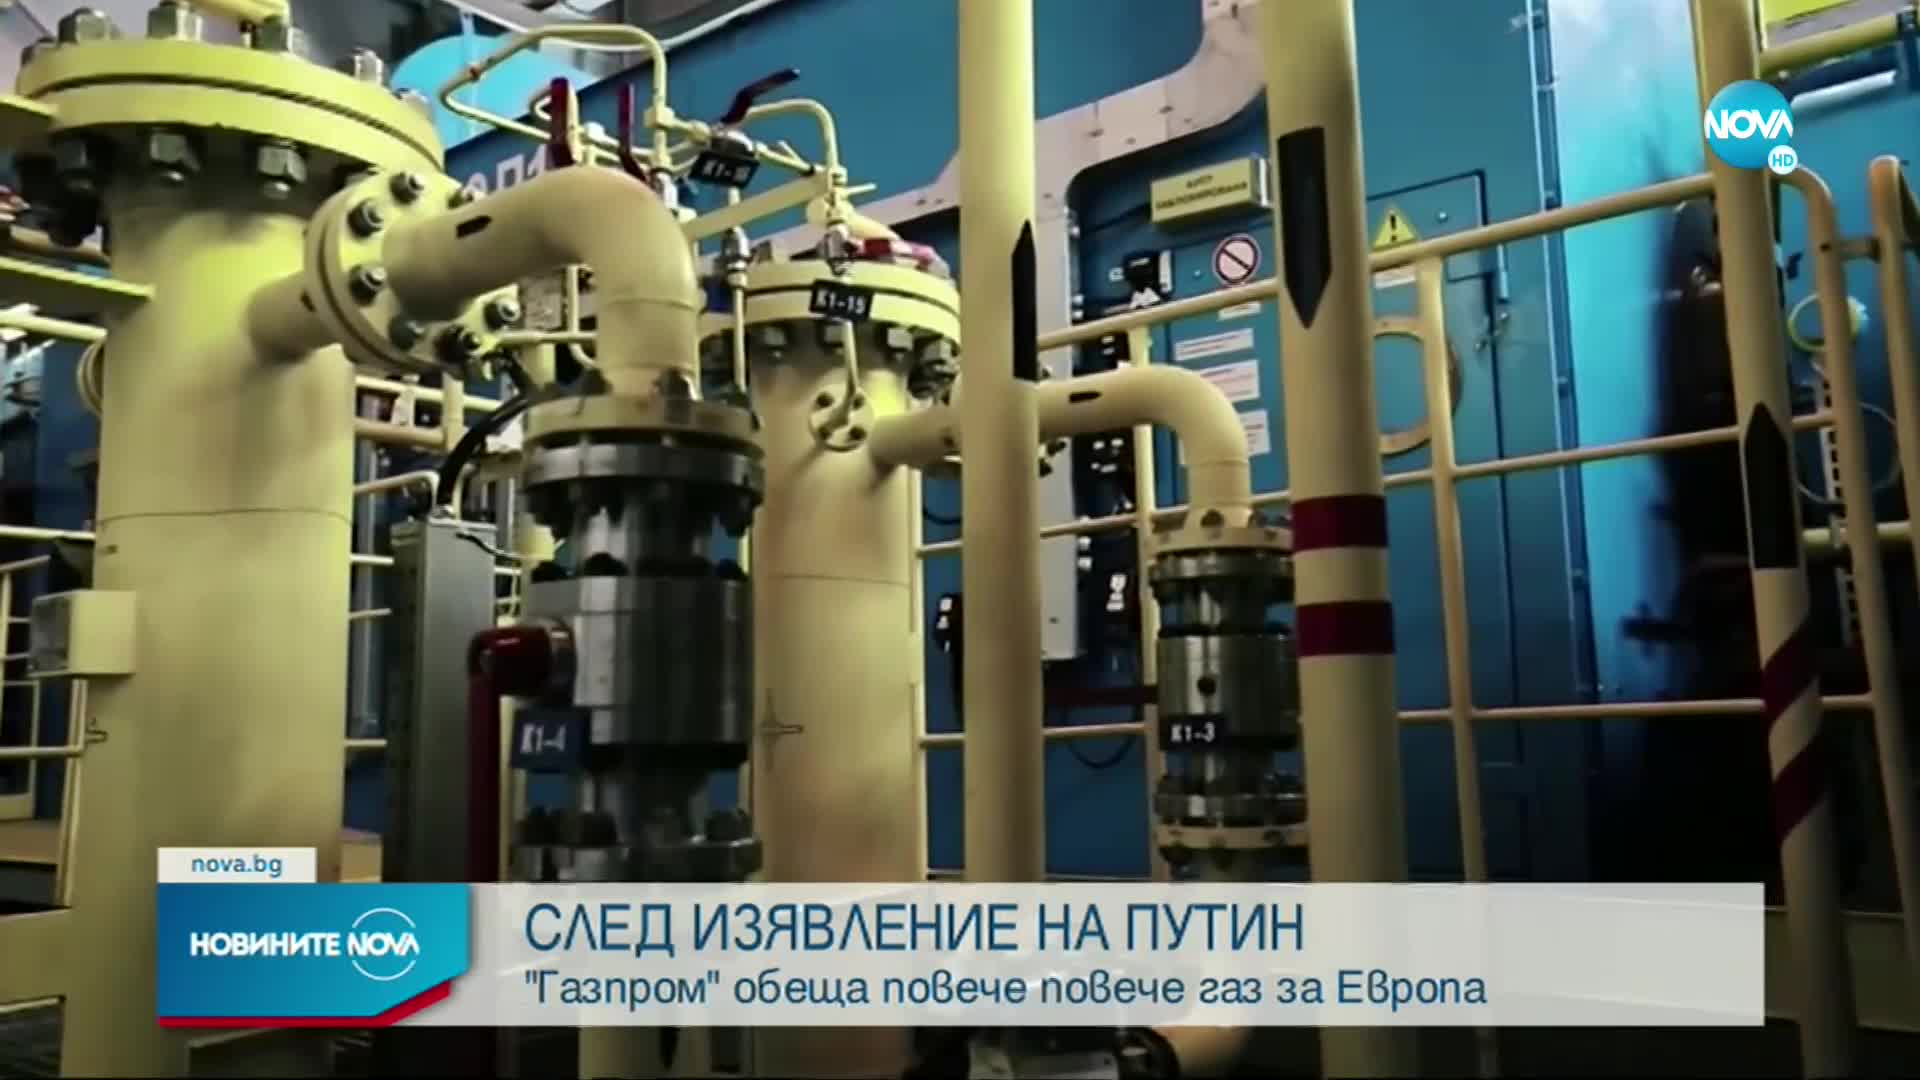 "Газпром" обеща повече повече газ за Европа